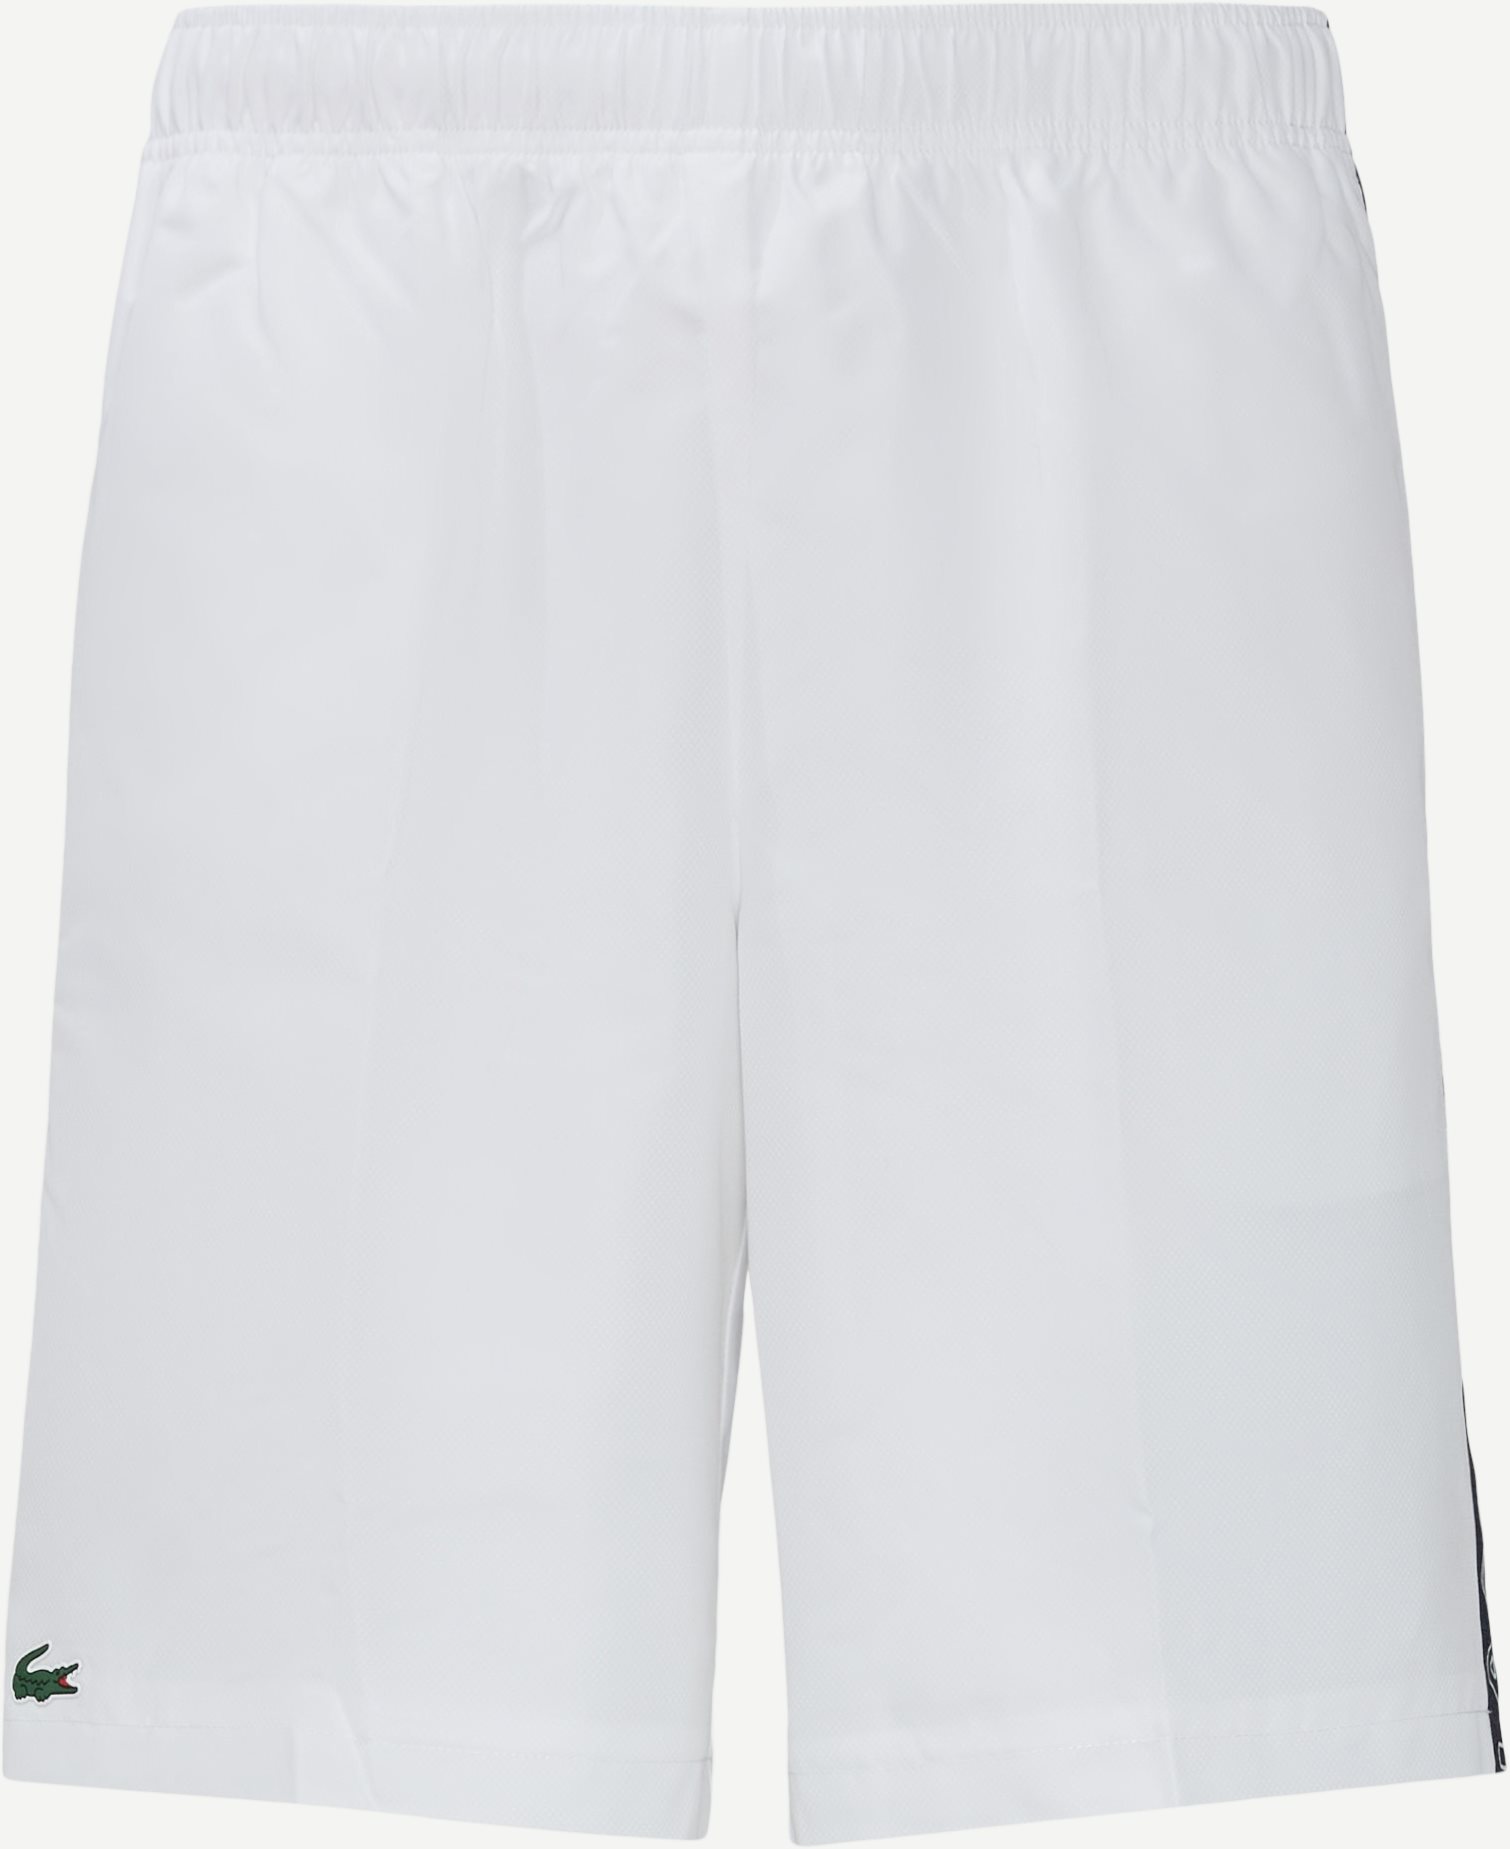 Sport Branded Bands Shorts - Shorts - Regular fit - Hvid